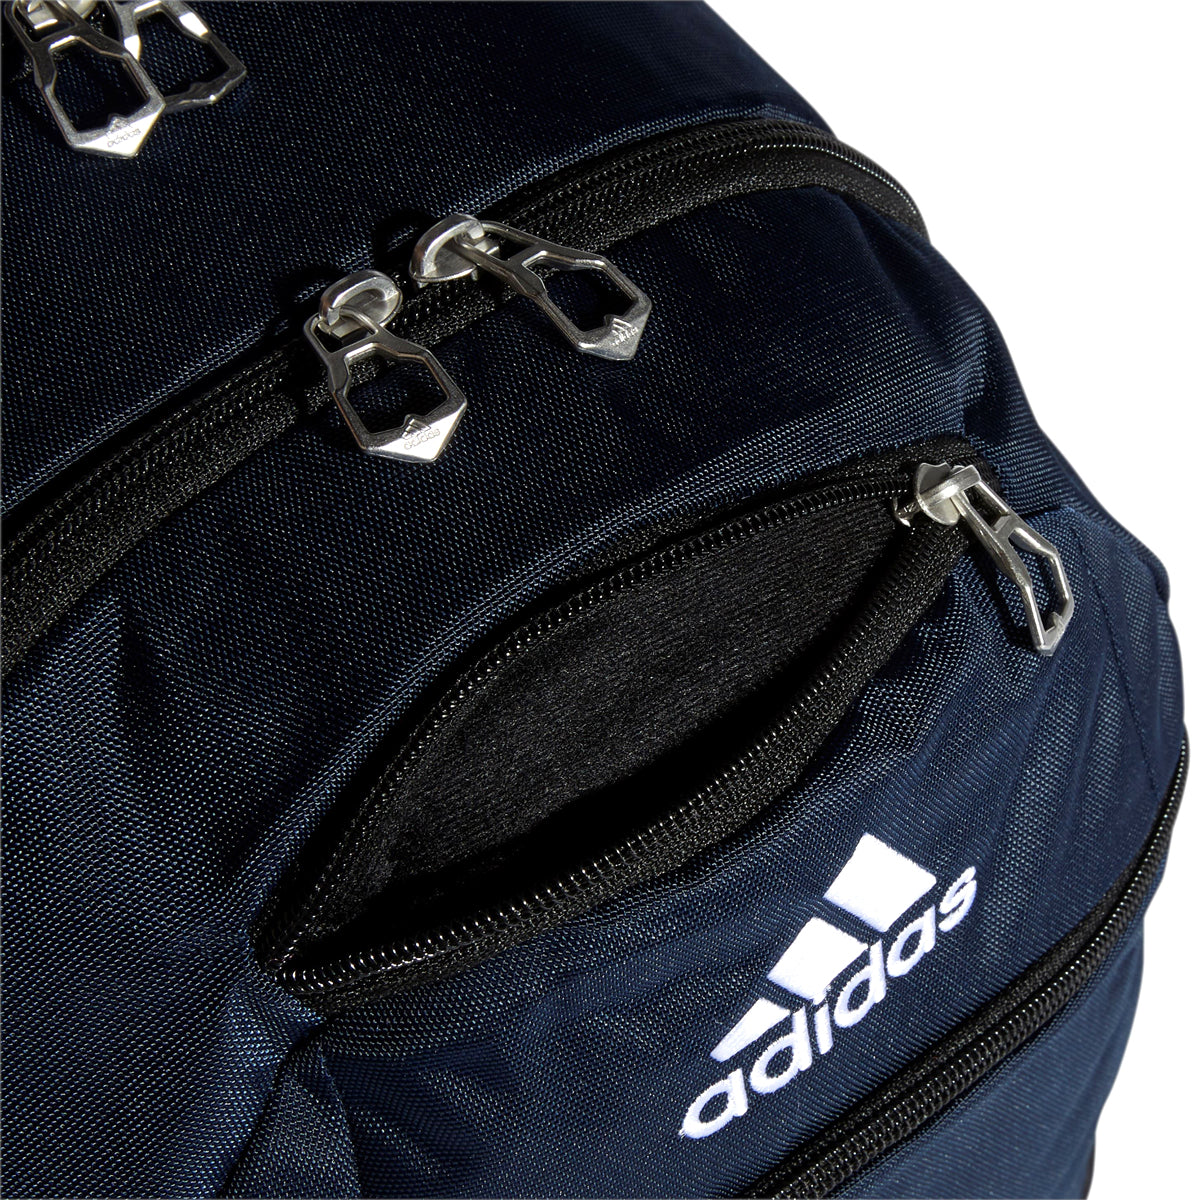 adidas Striker II Team Backpack Bags Adidas 